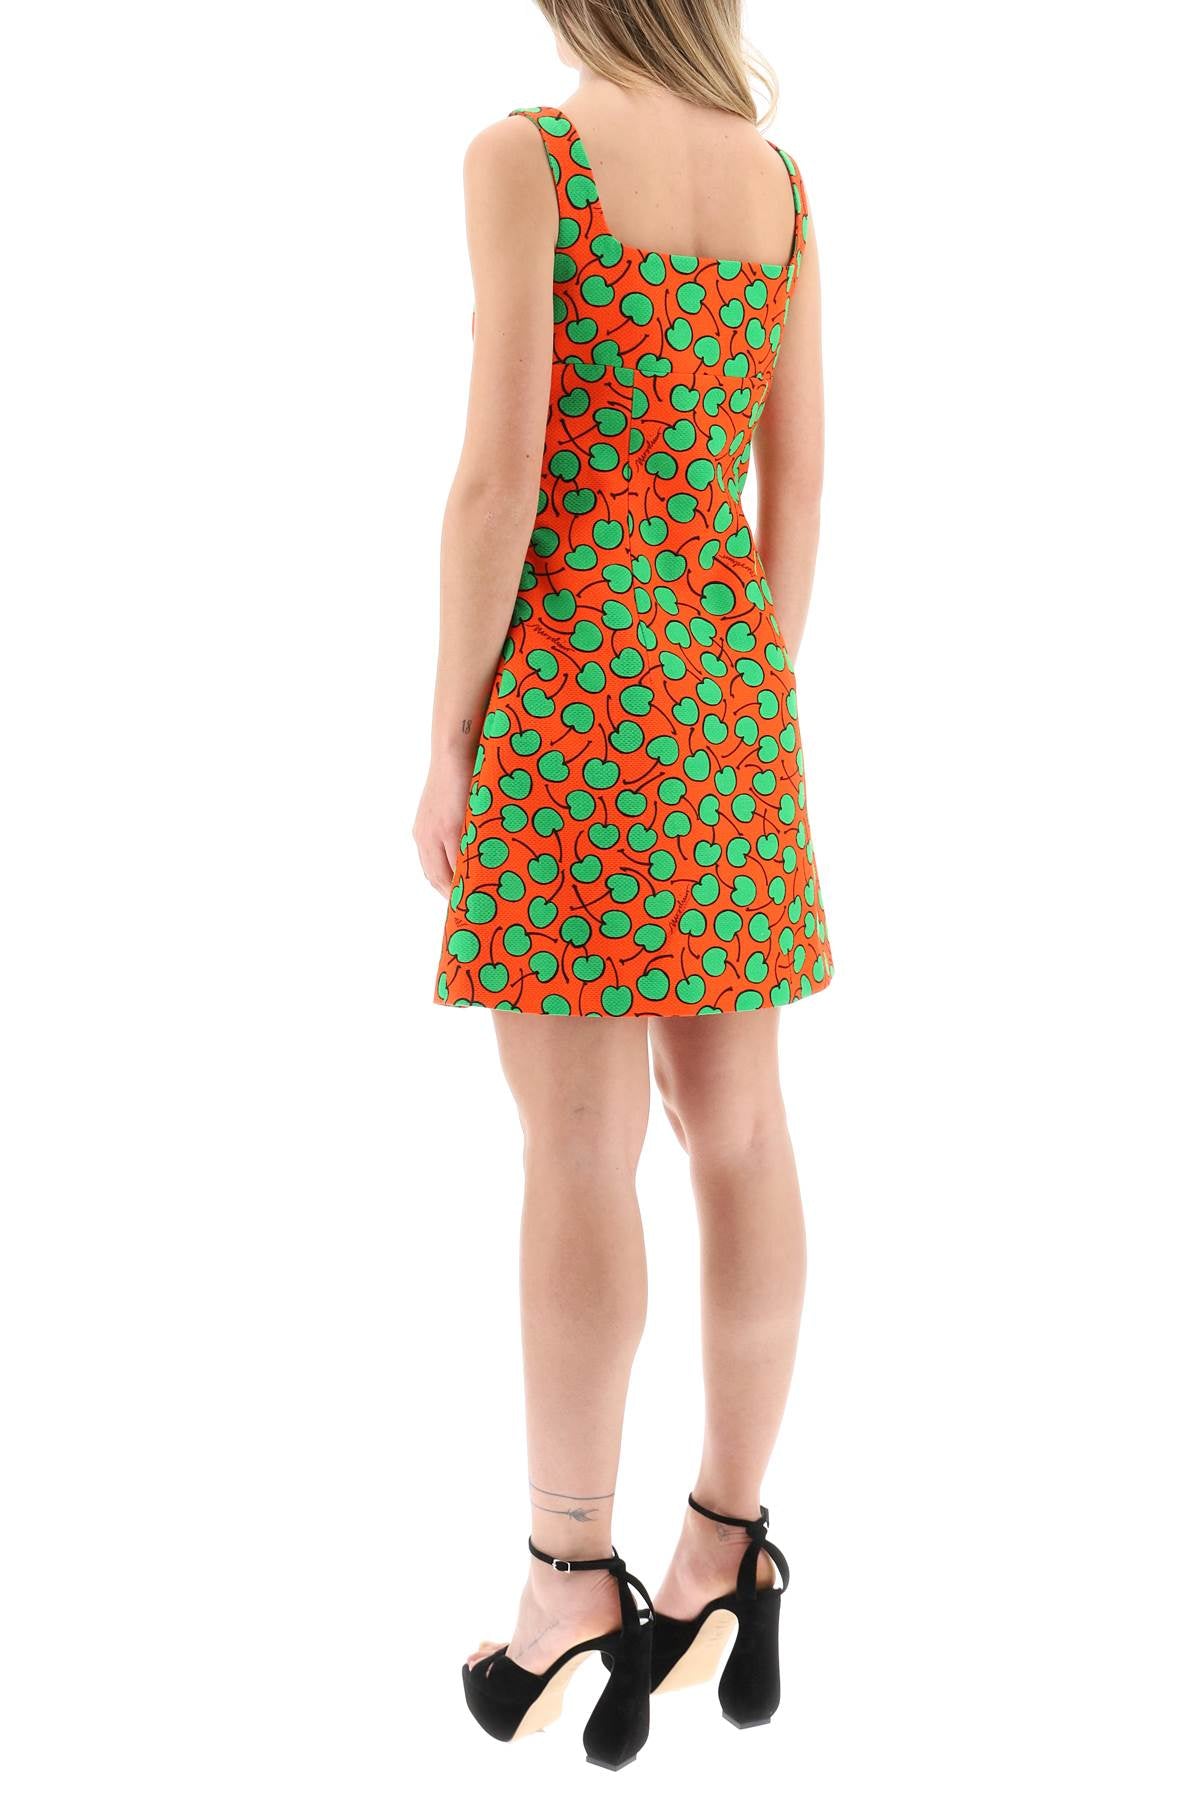 Moschino cherry print short dress-2